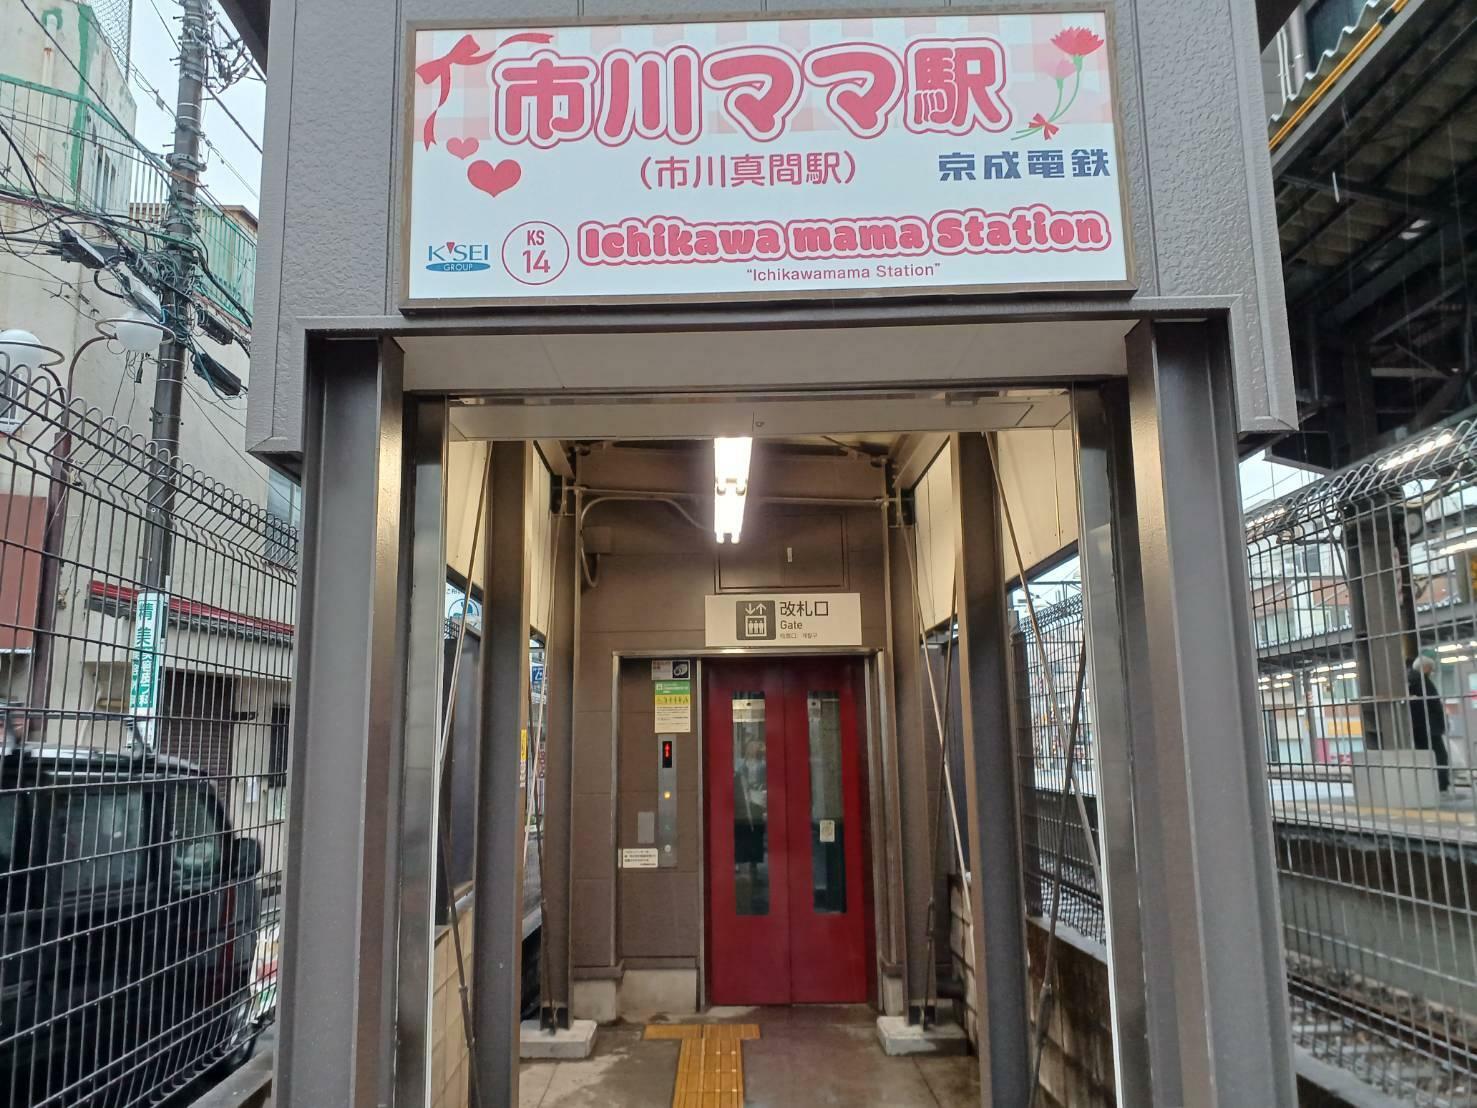 エレベーター乗り場も「市川ママ」駅。